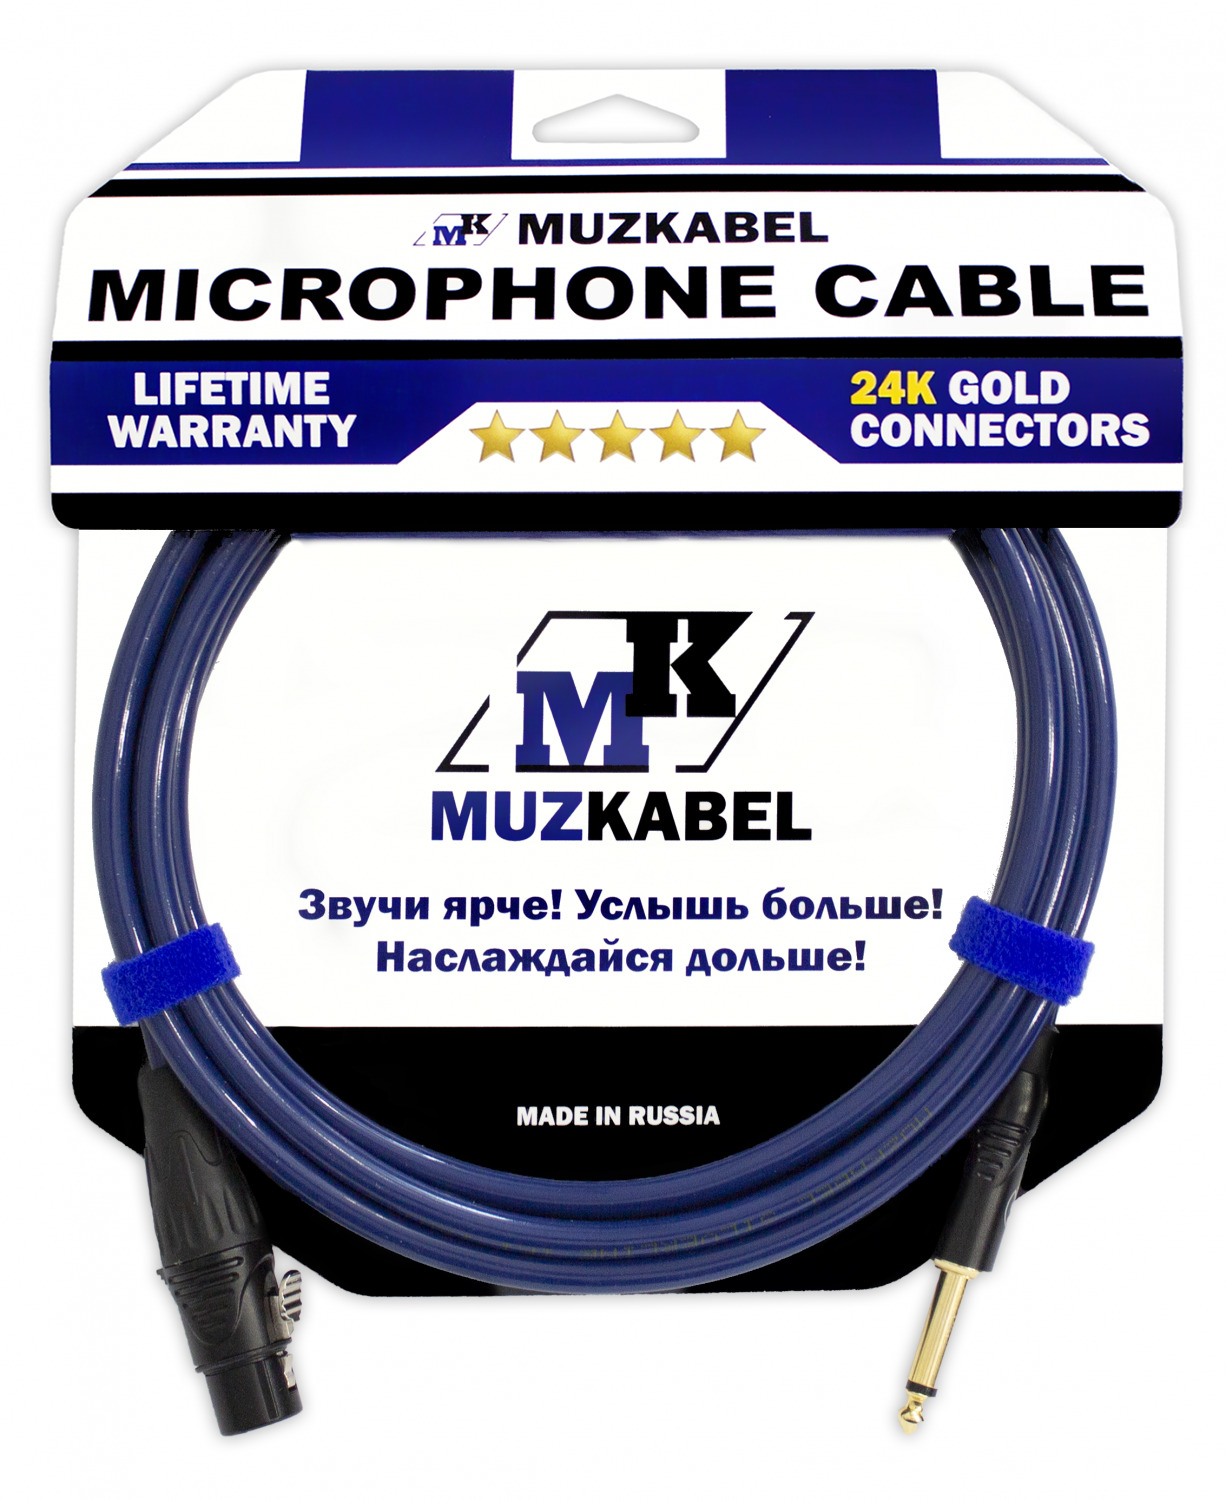 Микрофонный кабель MUZKABEL GJIK1 - 15 метров, XLR (МАМА) - JACK